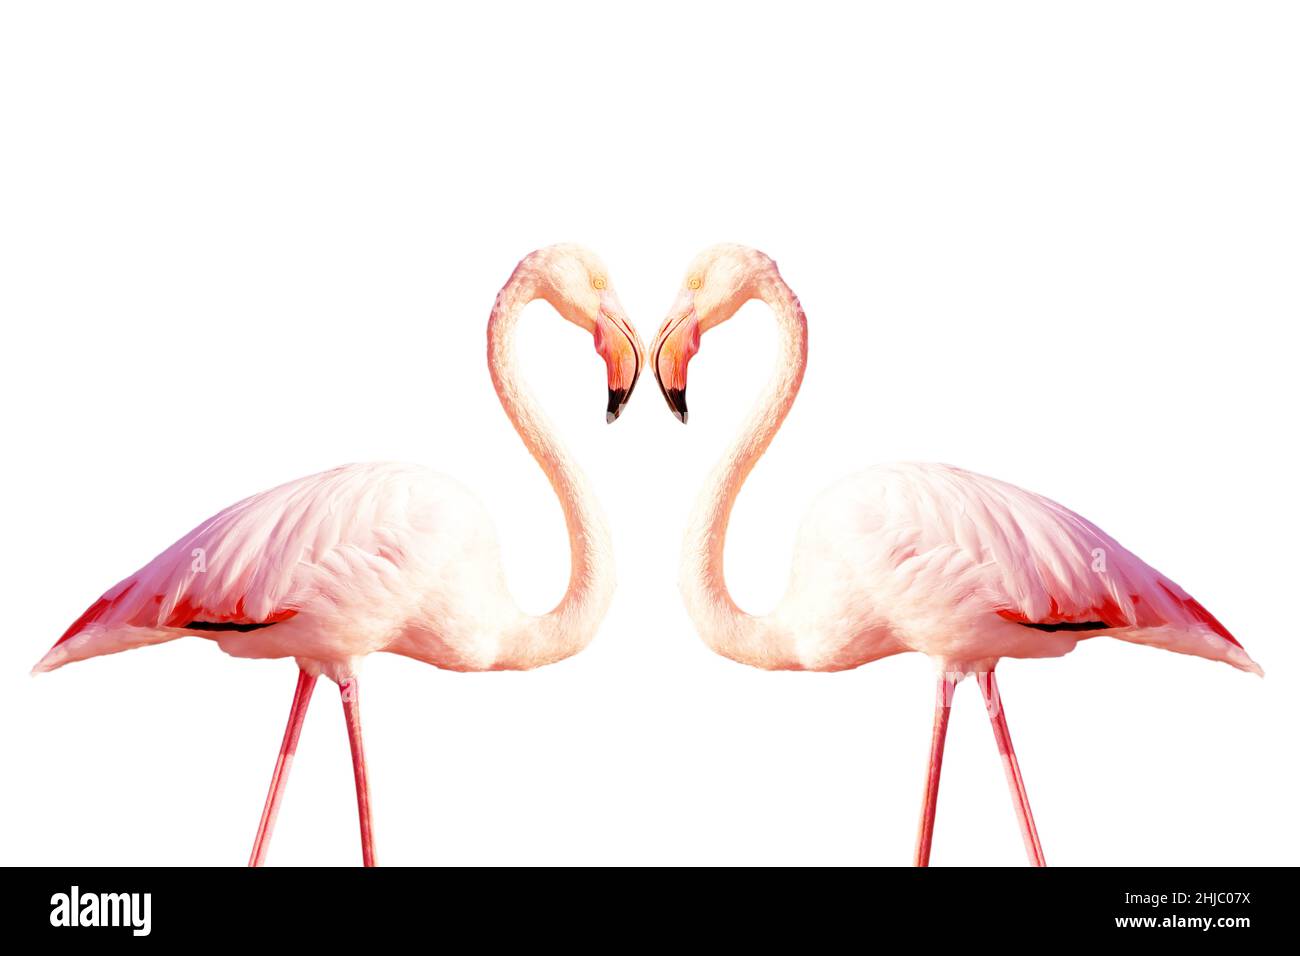 Zwei rosa Flamingos, die auf weißem Hintergrund eine Herzform bilden Stockfoto